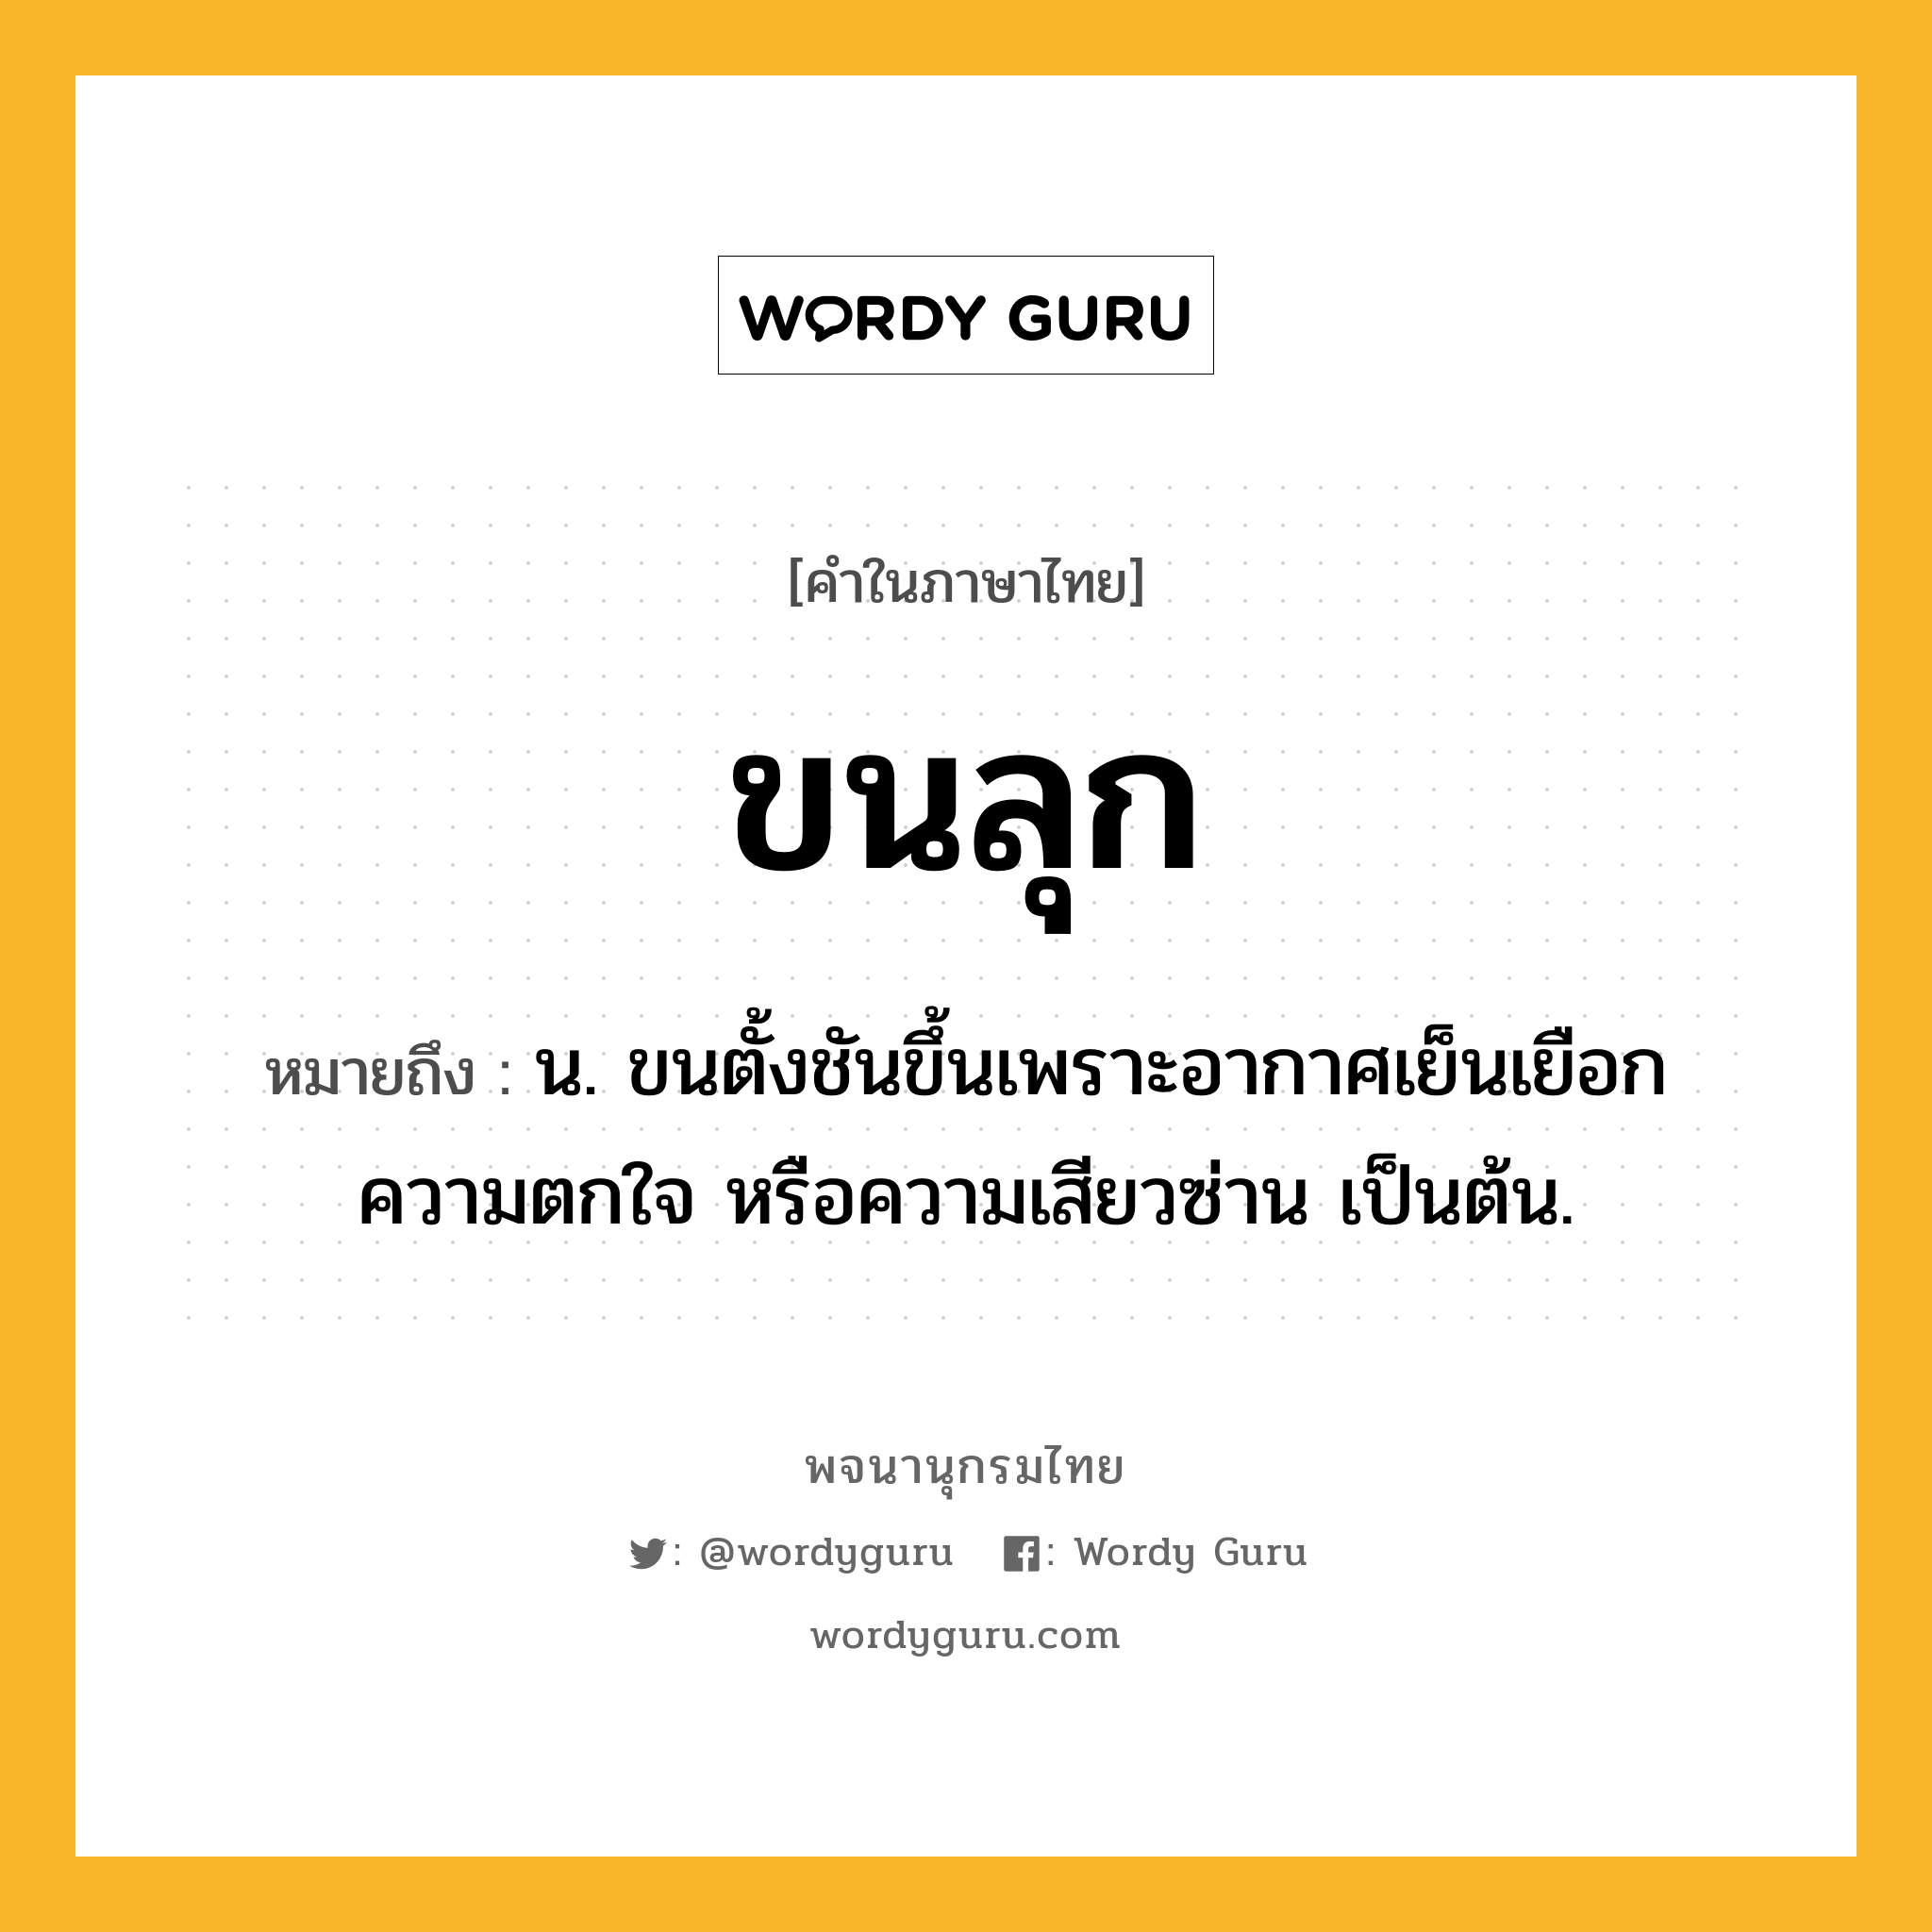 ขนลุก หมายถึงอะไร?, คำในภาษาไทย ขนลุก หมายถึง น. ขนตั้งชันขึ้นเพราะอากาศเย็นเยือก ความตกใจ หรือความเสียวซ่าน เป็นต้น.